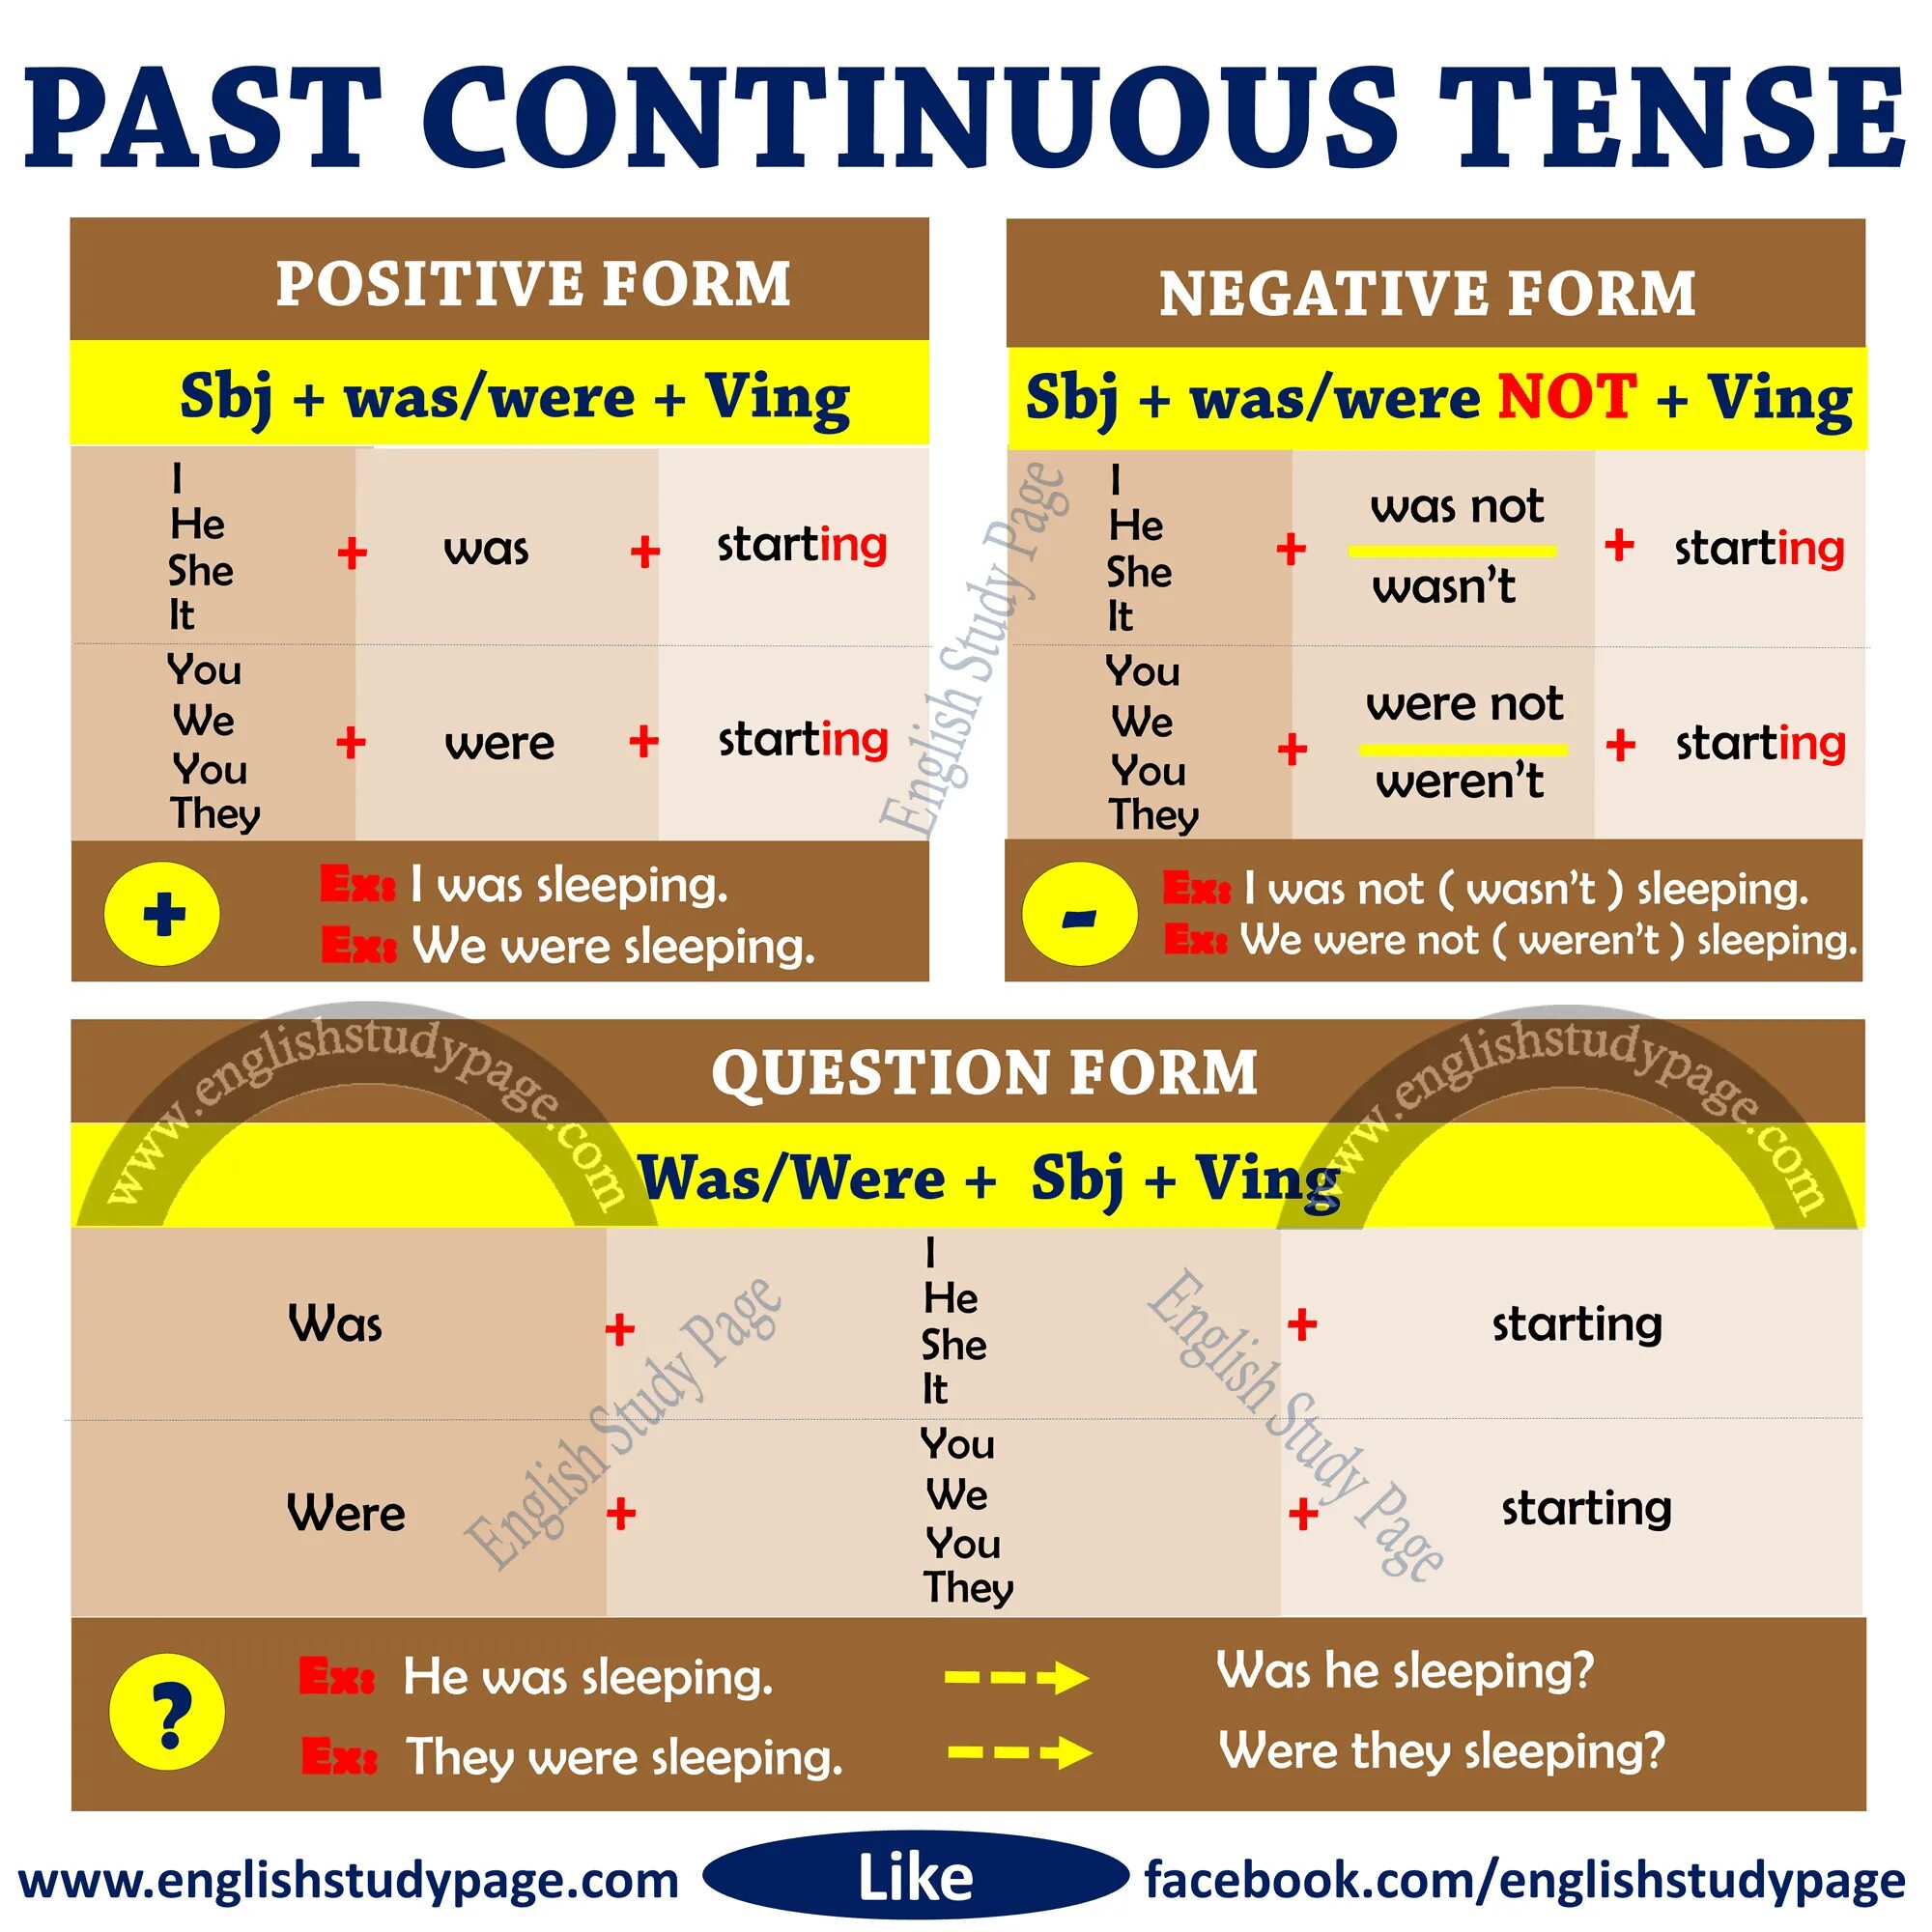 Past continuous tense form. Past Continuous. Past Continuous таблица. Образование past Continuous в английском языке. Паст континиус тенс.